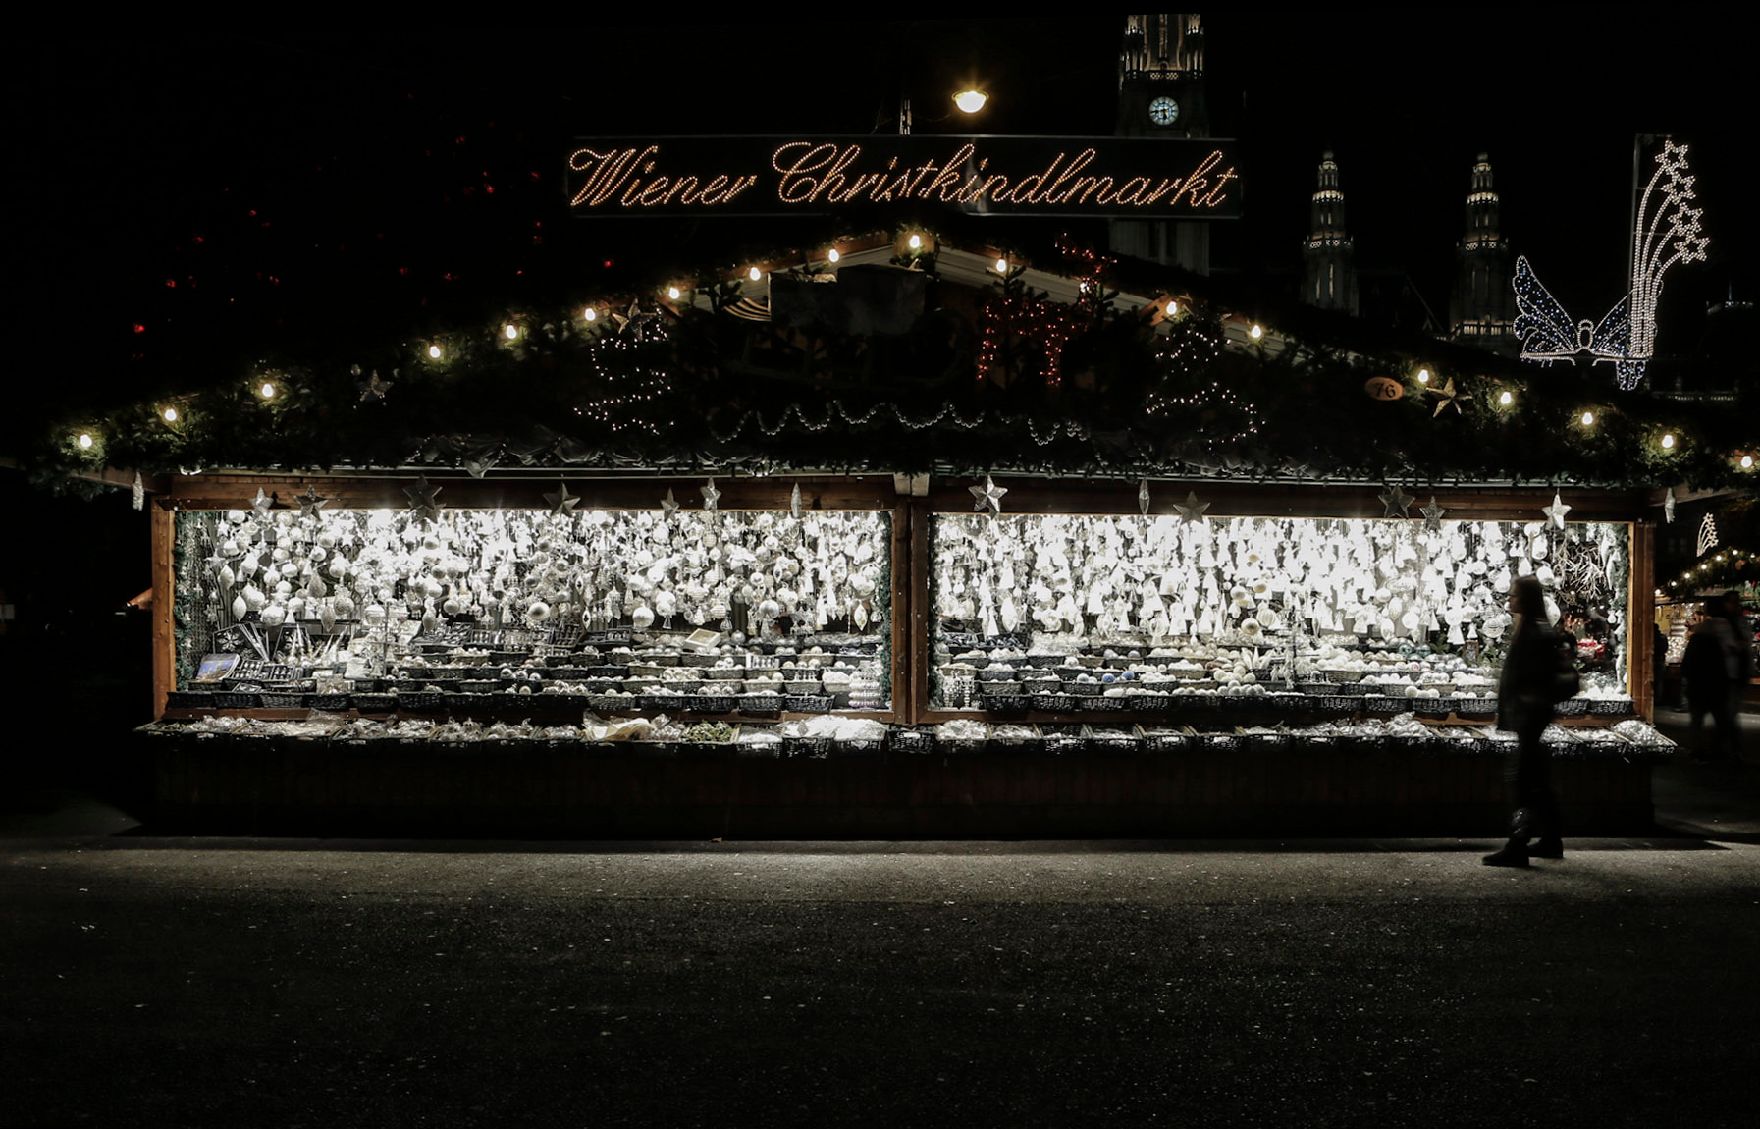 Der Christkindlmarkt am Rathausplatz bei Nacht. Schlagworte: Abend, Beleuchtung, Kugeln, Marktstand, Mensch, Sehenswürdigkeit, Stadtlandschaften, Weihnachten